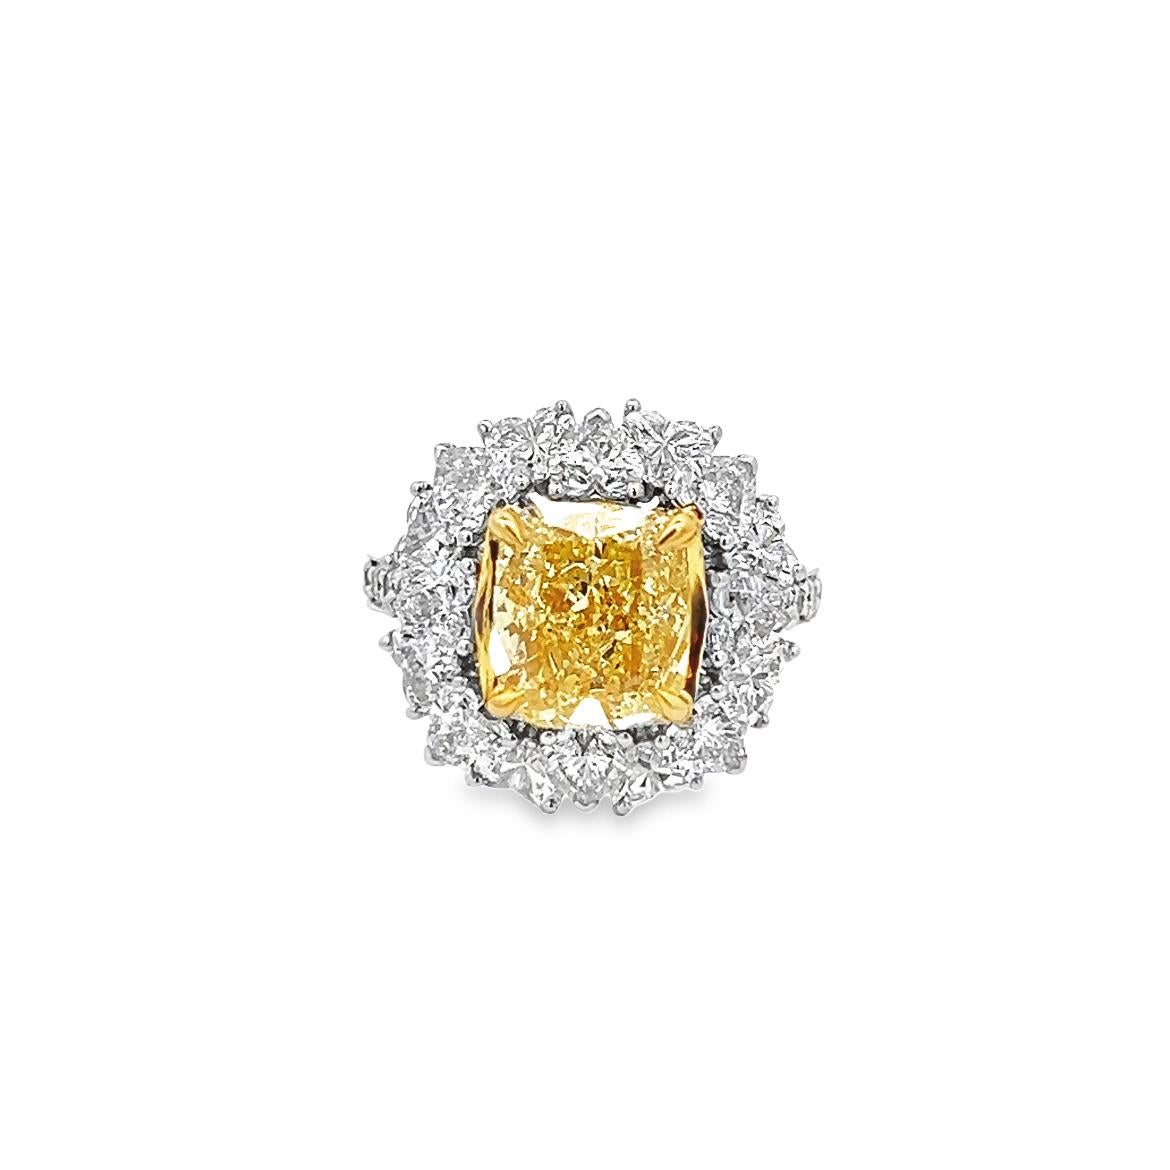 Cette exceptionnelle bague de 3,63 coussins de diamant modifié brillant, de couleur naturelle jaune vif, pureté SI1, certifiée par la GIA, est un véritable chef-d'œuvre. Sa conception artisanale et sa monture en or jaune 18 carats en font un bijou